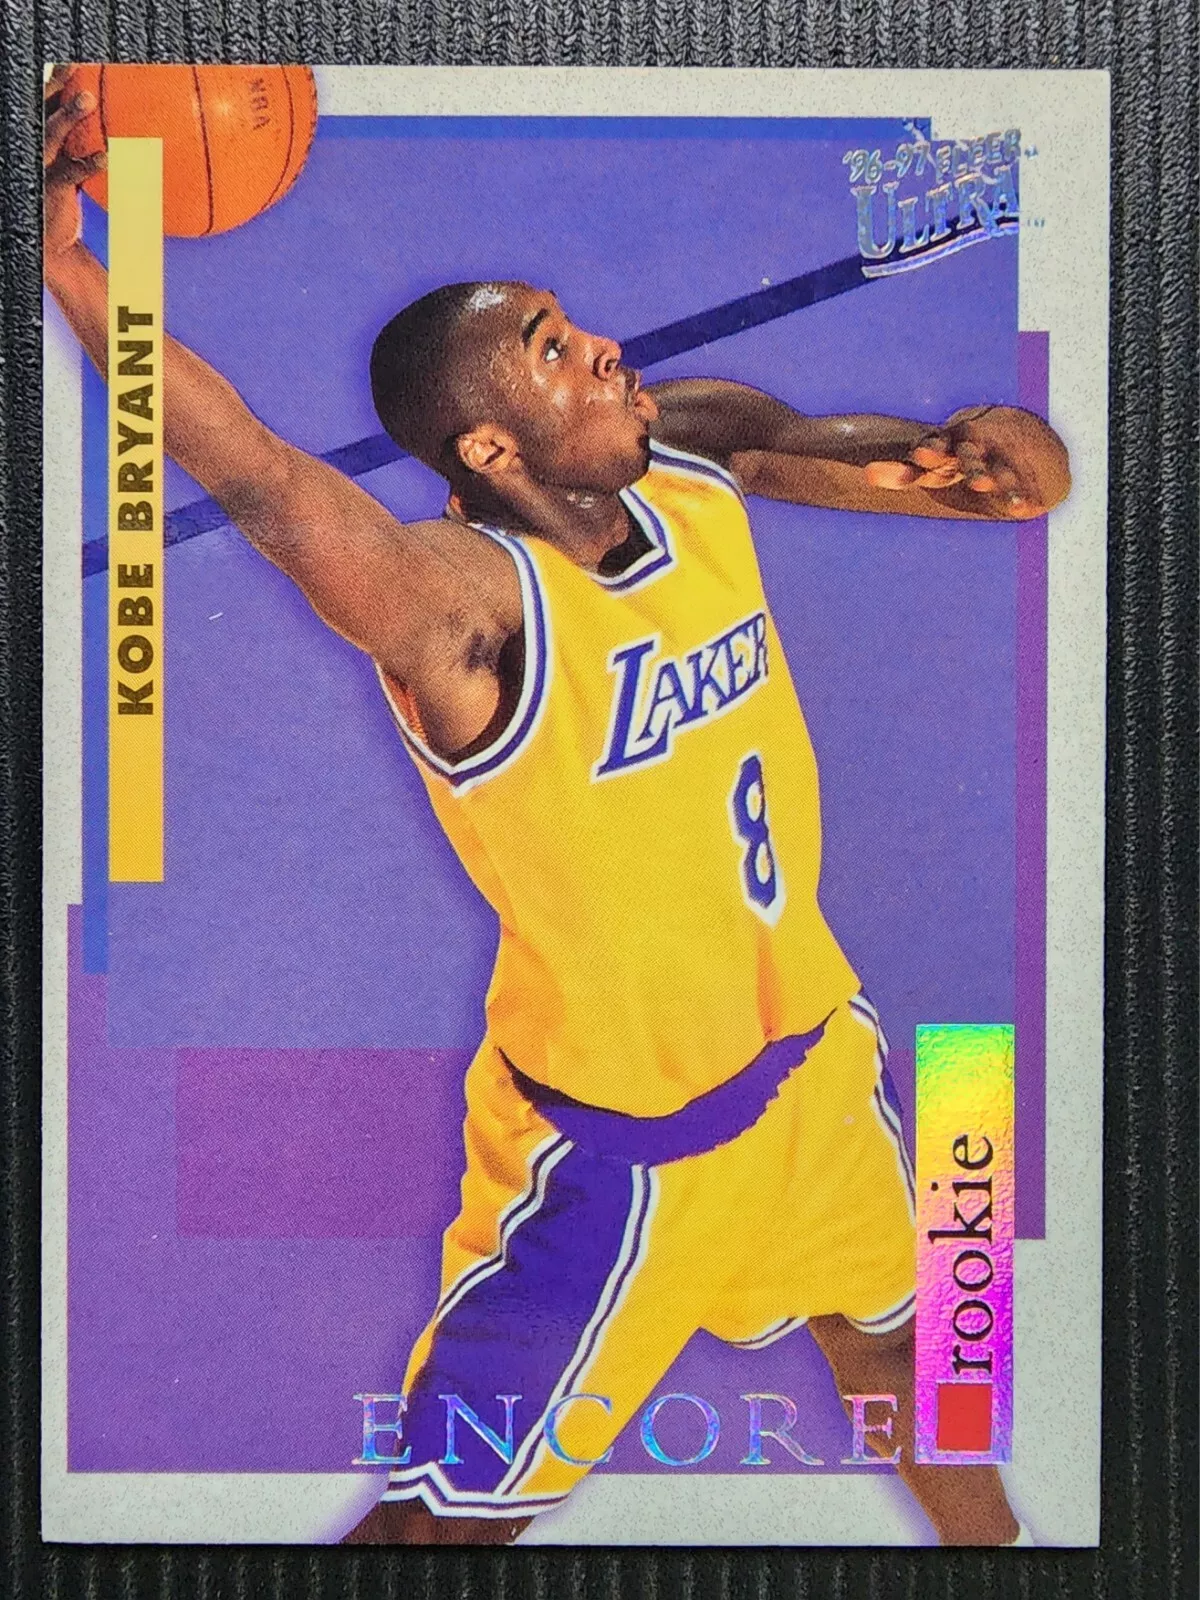 Kobe Bryant 1996-97 Skybox Fleer Ultra Encore Rookie Card #266